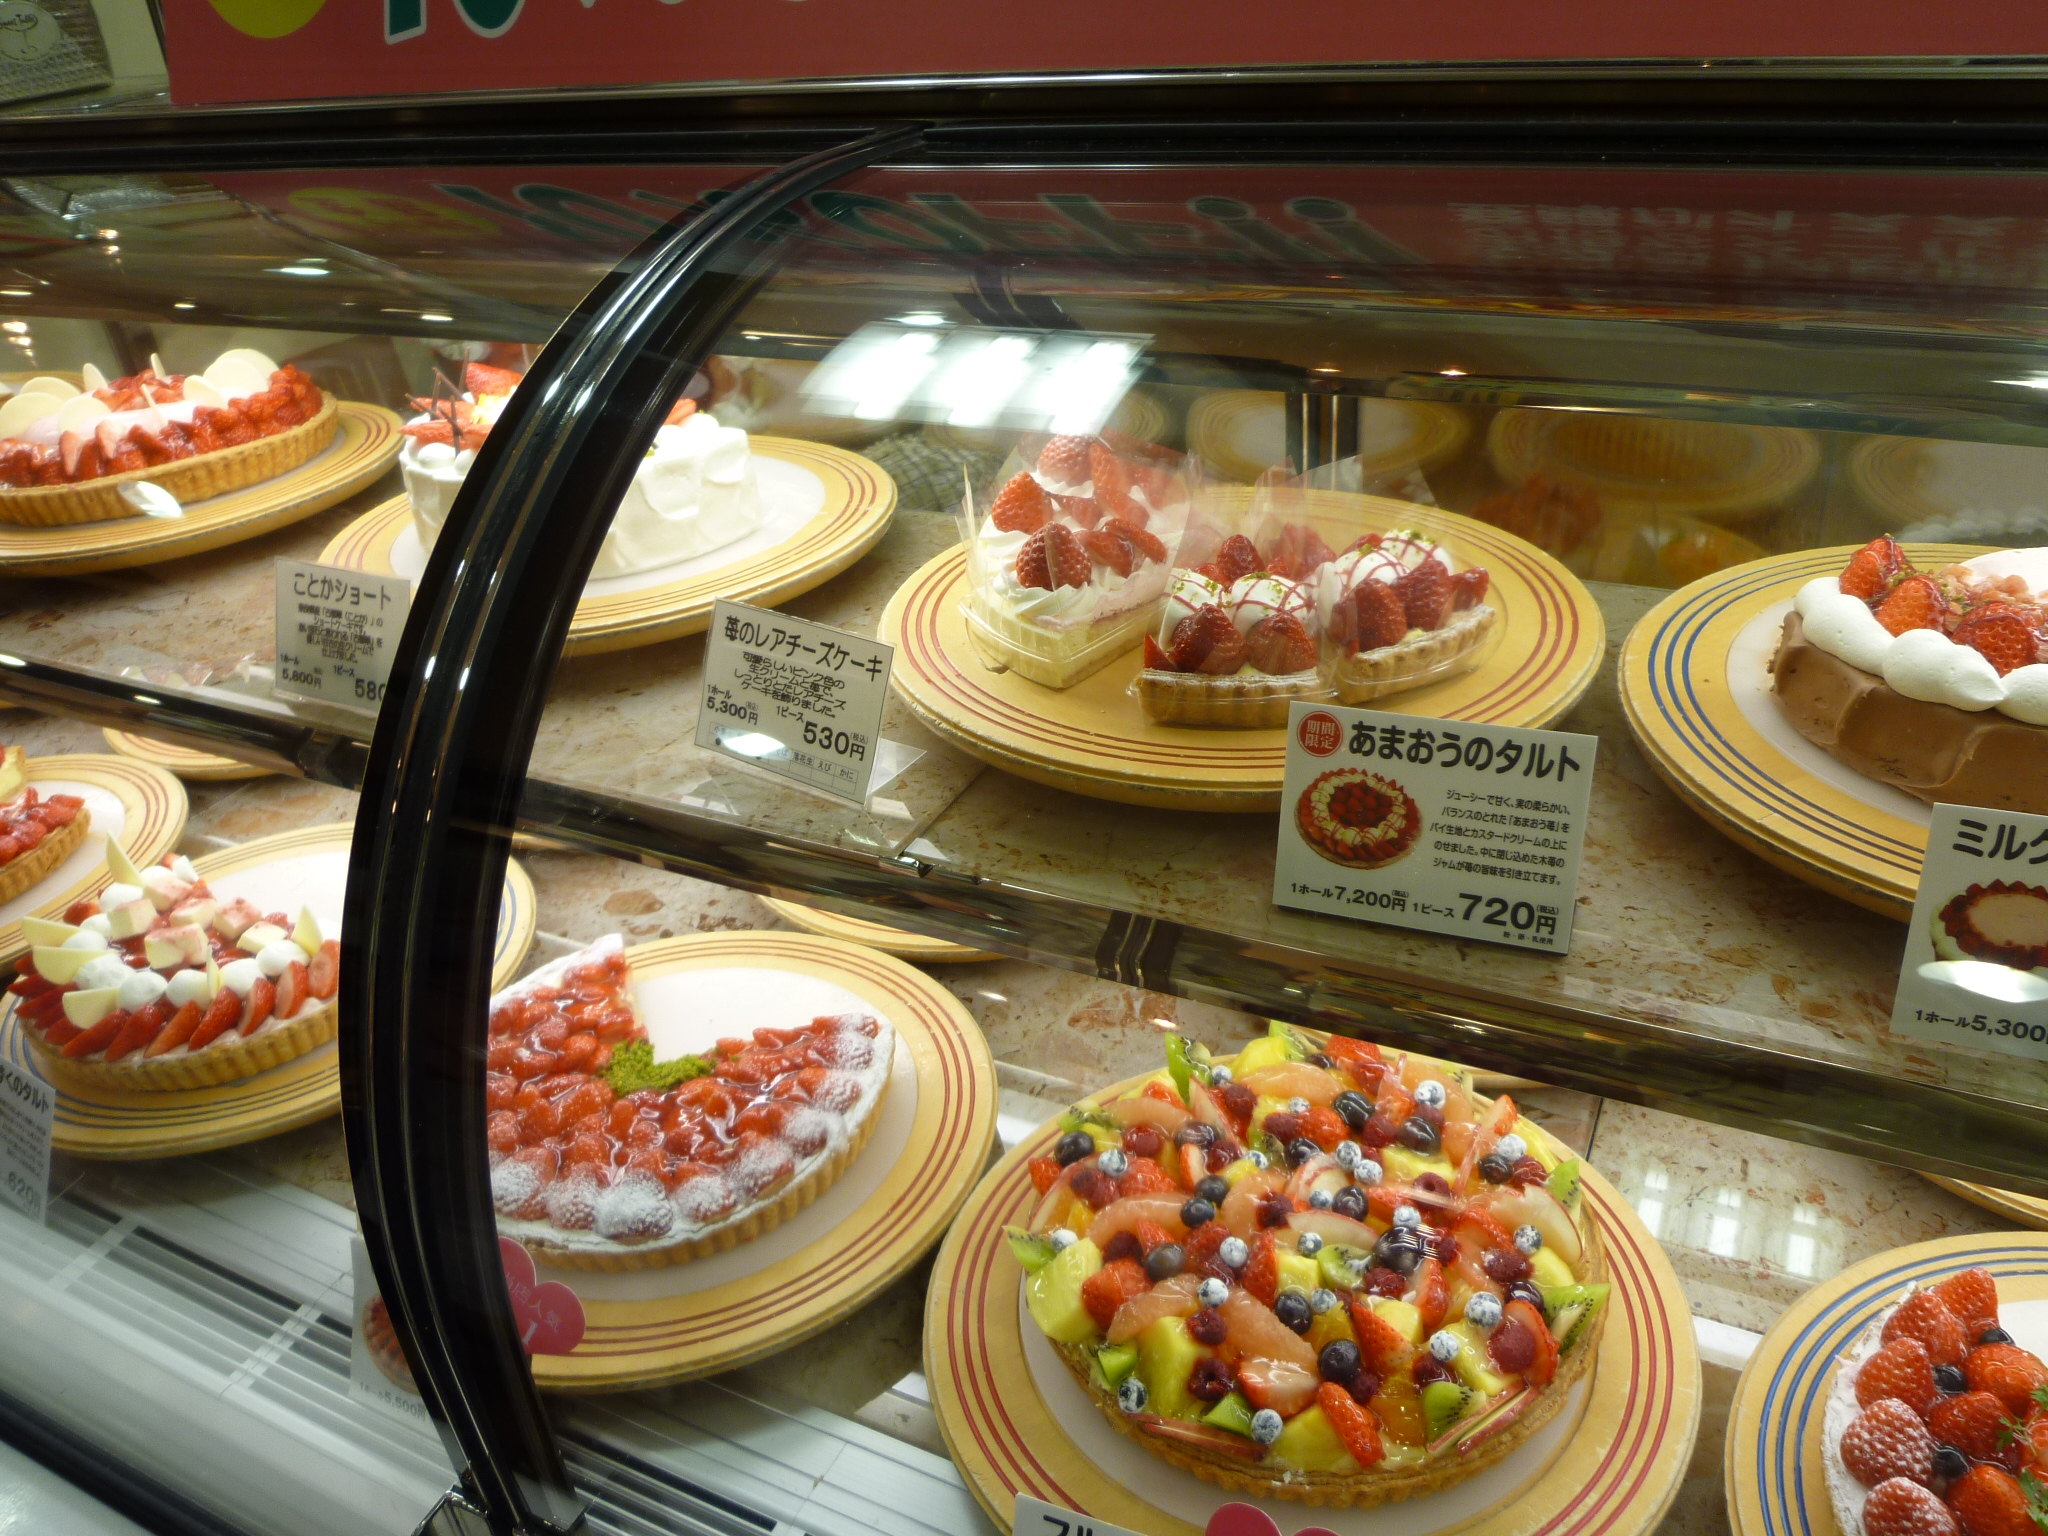 スープカレーのドルチェは北海道スイーツ フルーツケーキファクトリー すすきの店 カンマネの安心できるかわからないブログ